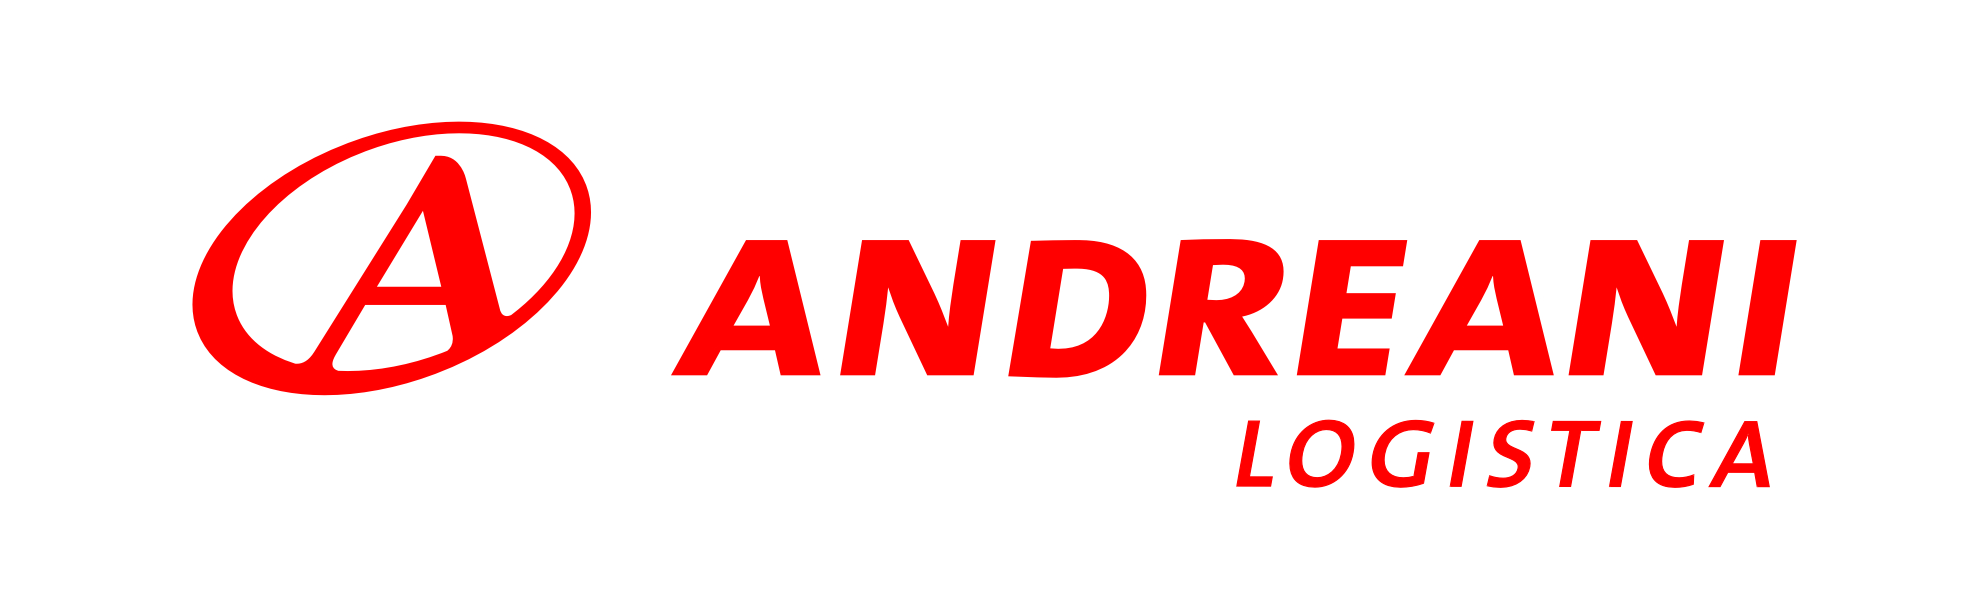 Andreani Logo